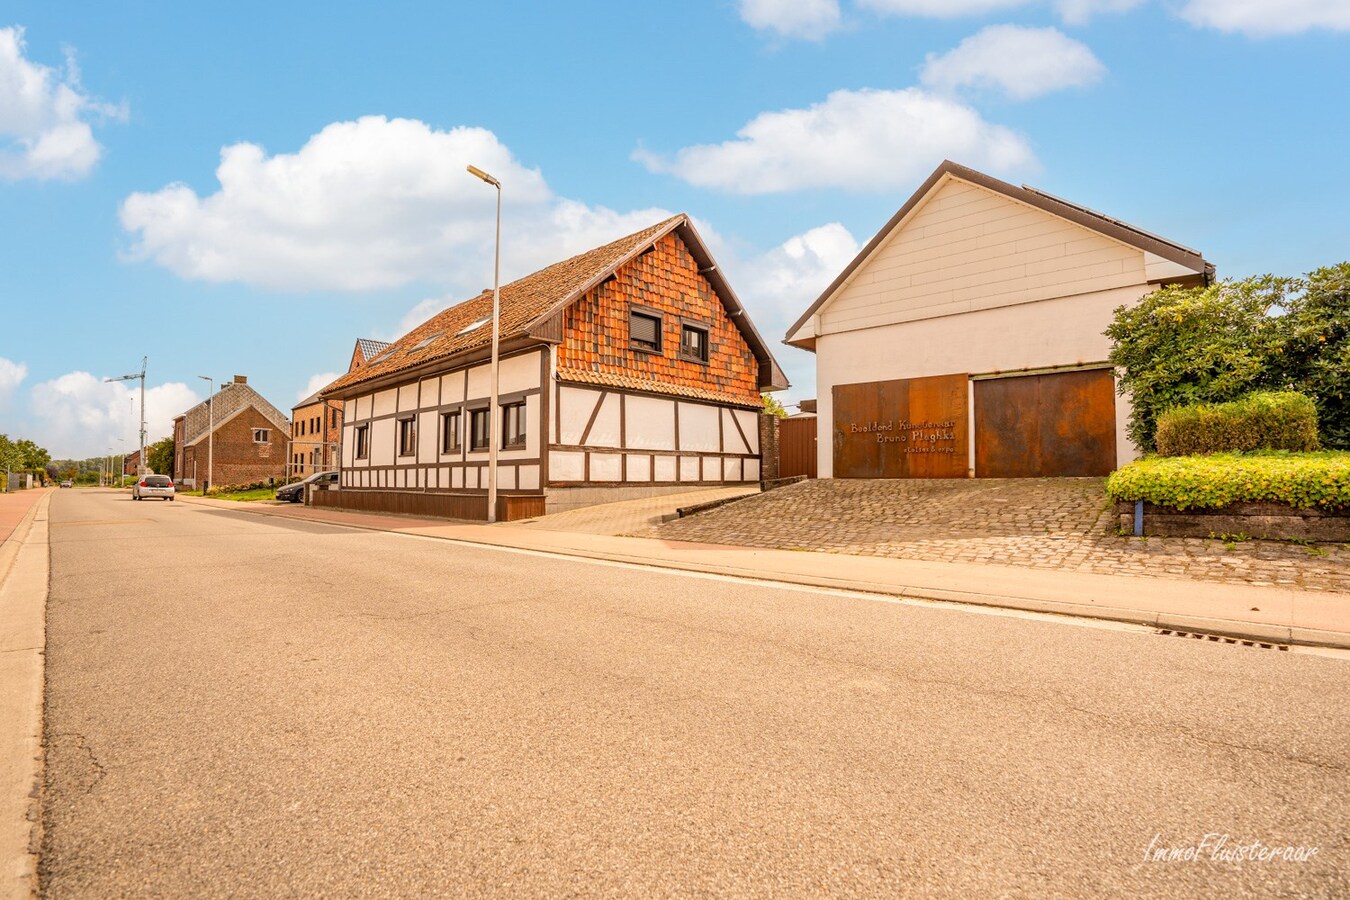 Property sold in Kortessem